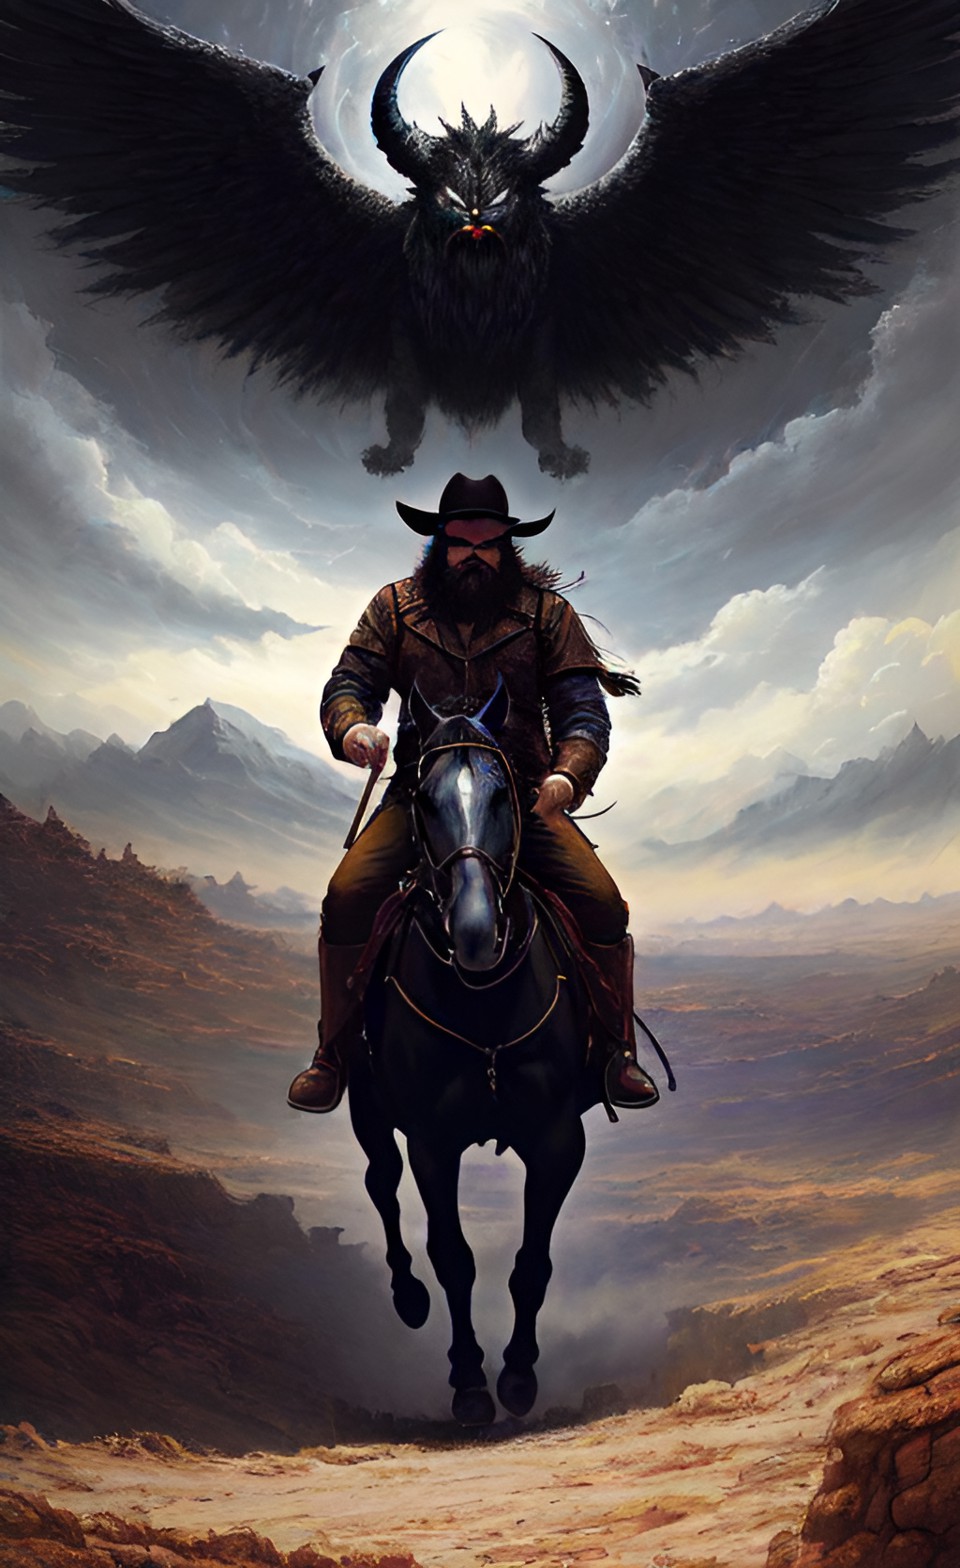 Este é o conto de Brody Hampton, um cowboy barbudo, montado em um cavalo seguindo pelo deserto seguido por um demônio alado voando acima dele